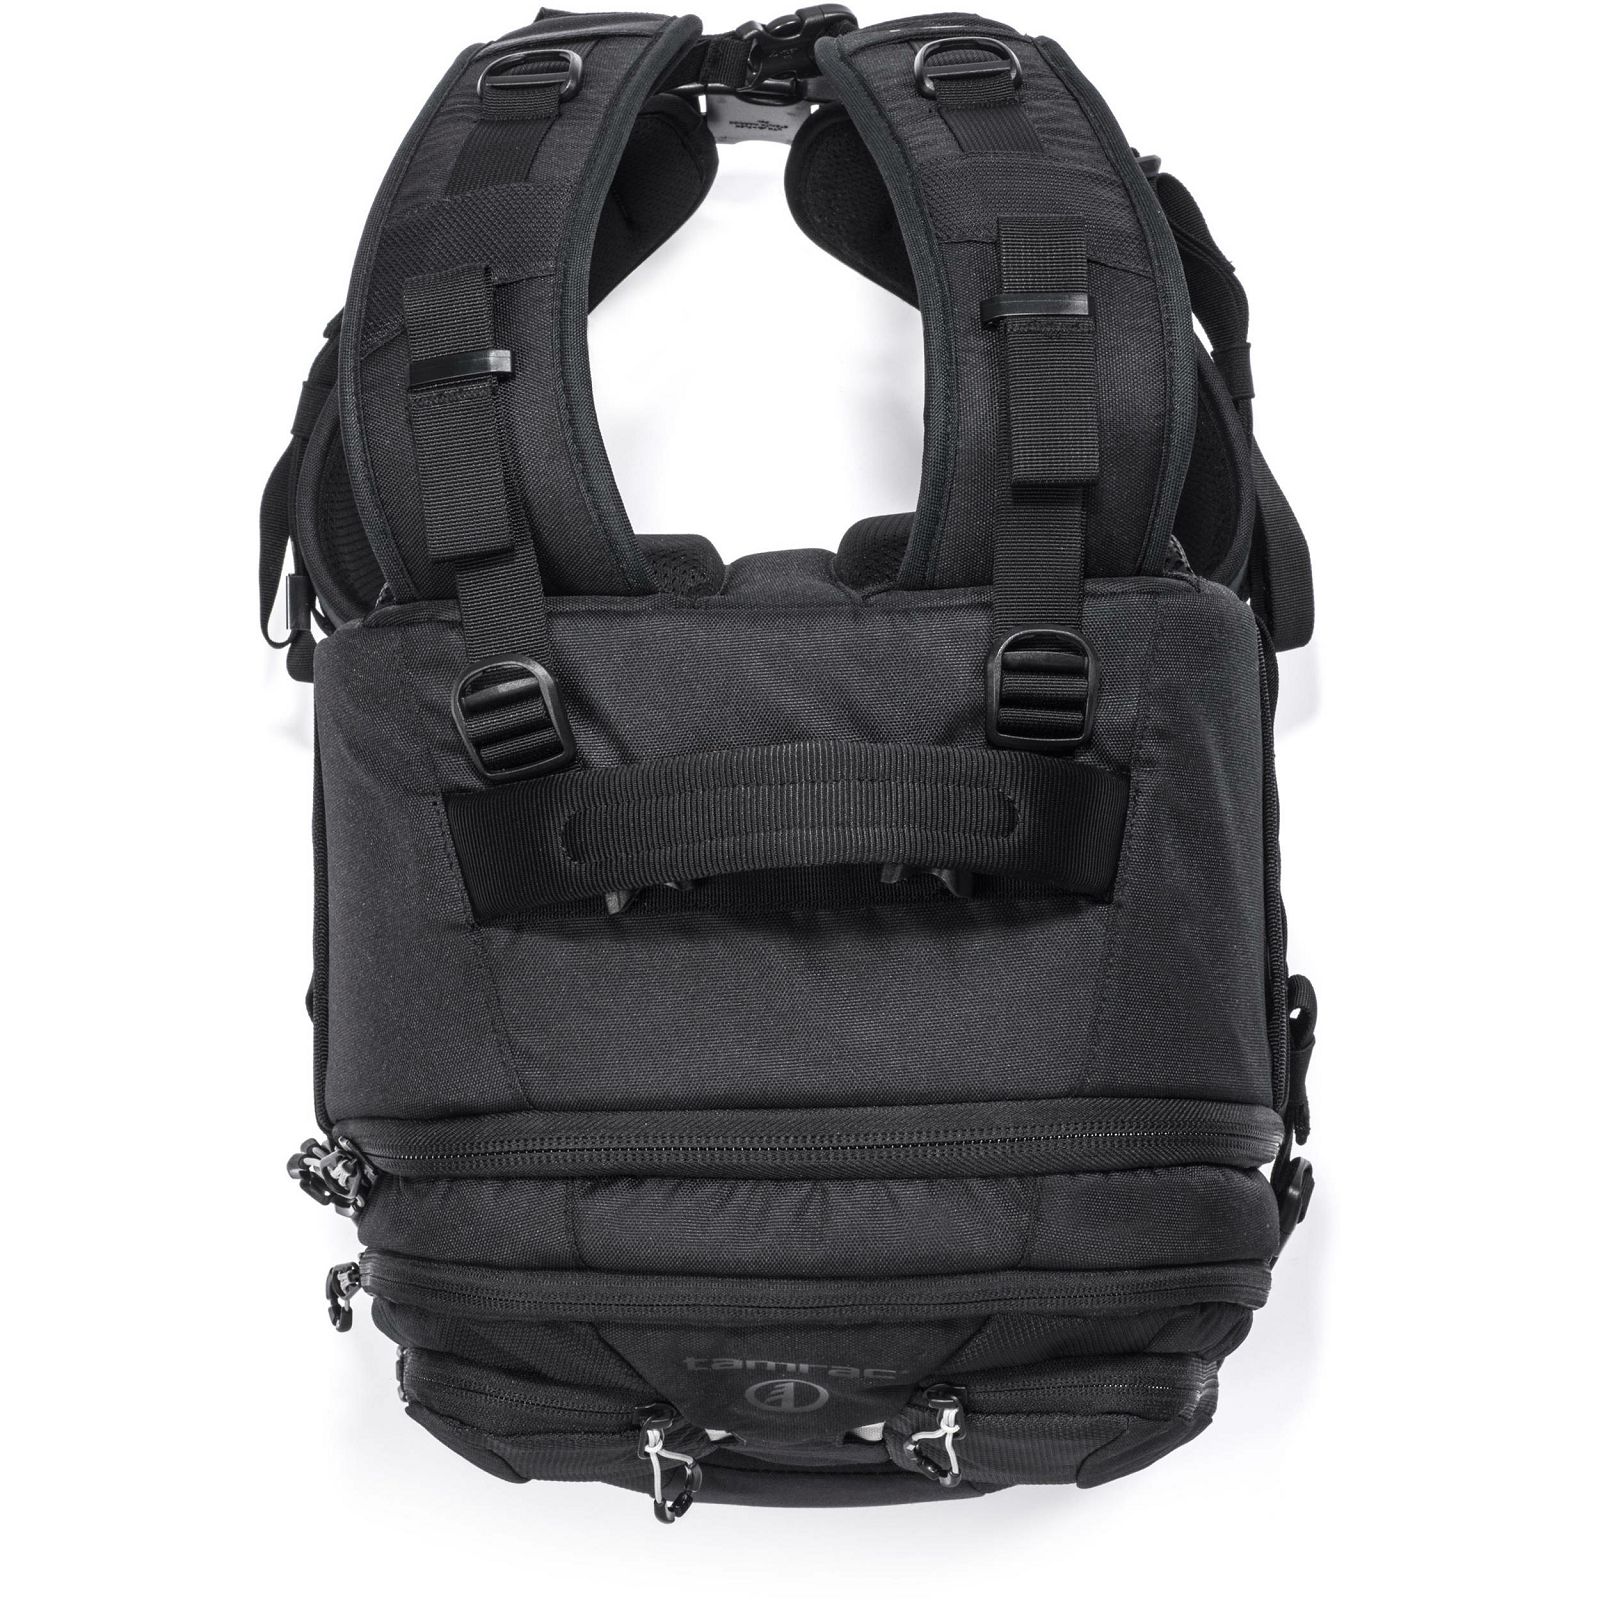 Tamrac Anvil 23 Backpack Black crni ruksak za foto opremu (T0240-1919)